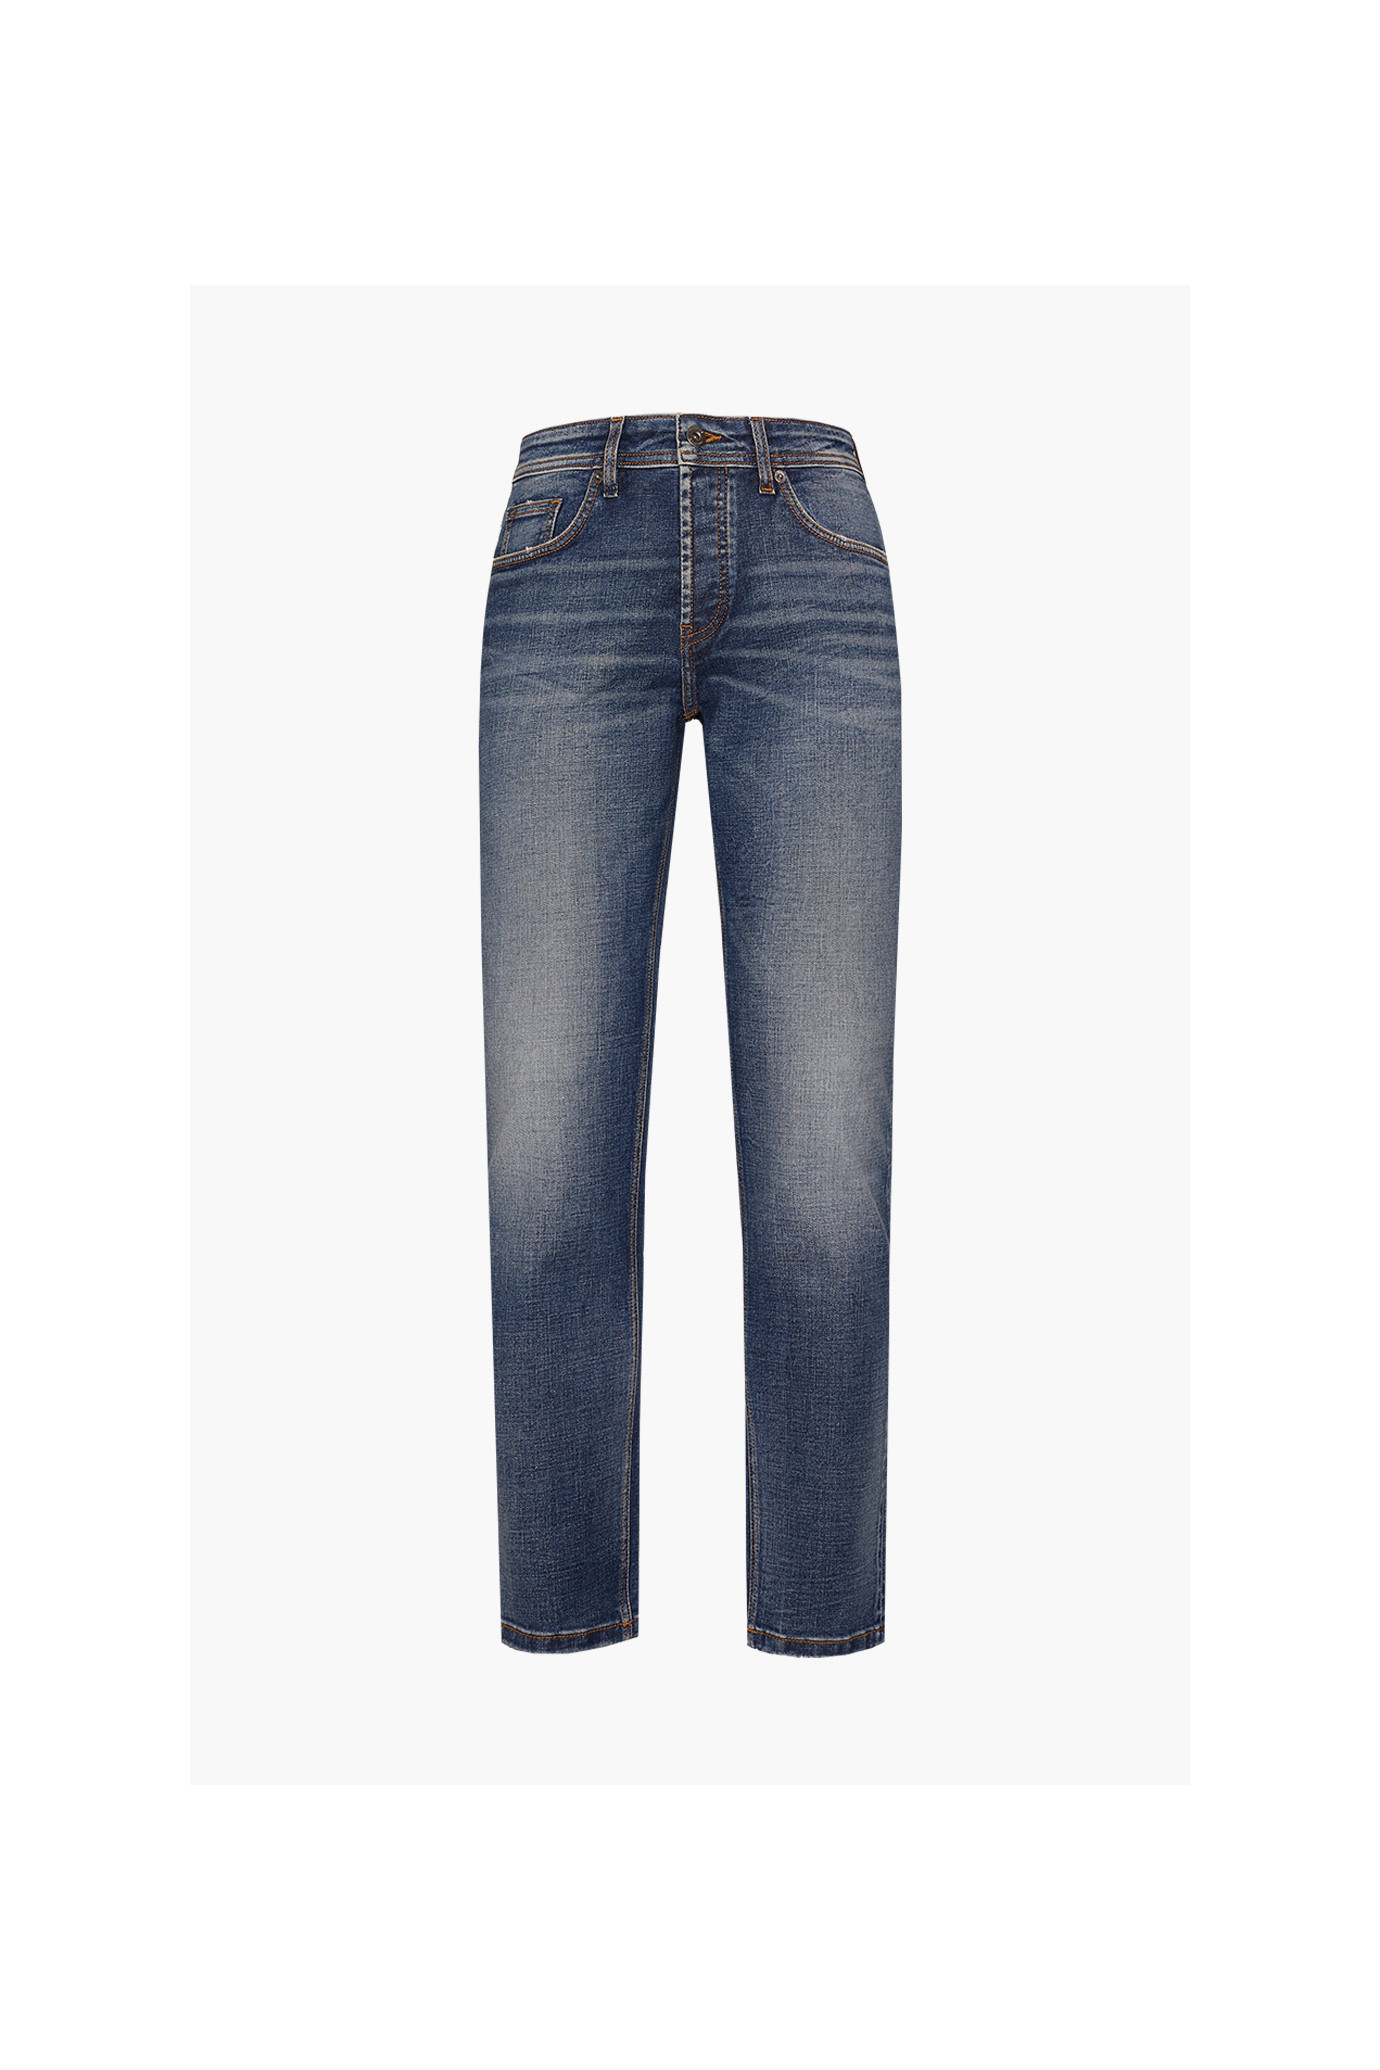 jeans-5-tasche-slim-fit-lavaggio-chiaro (2)